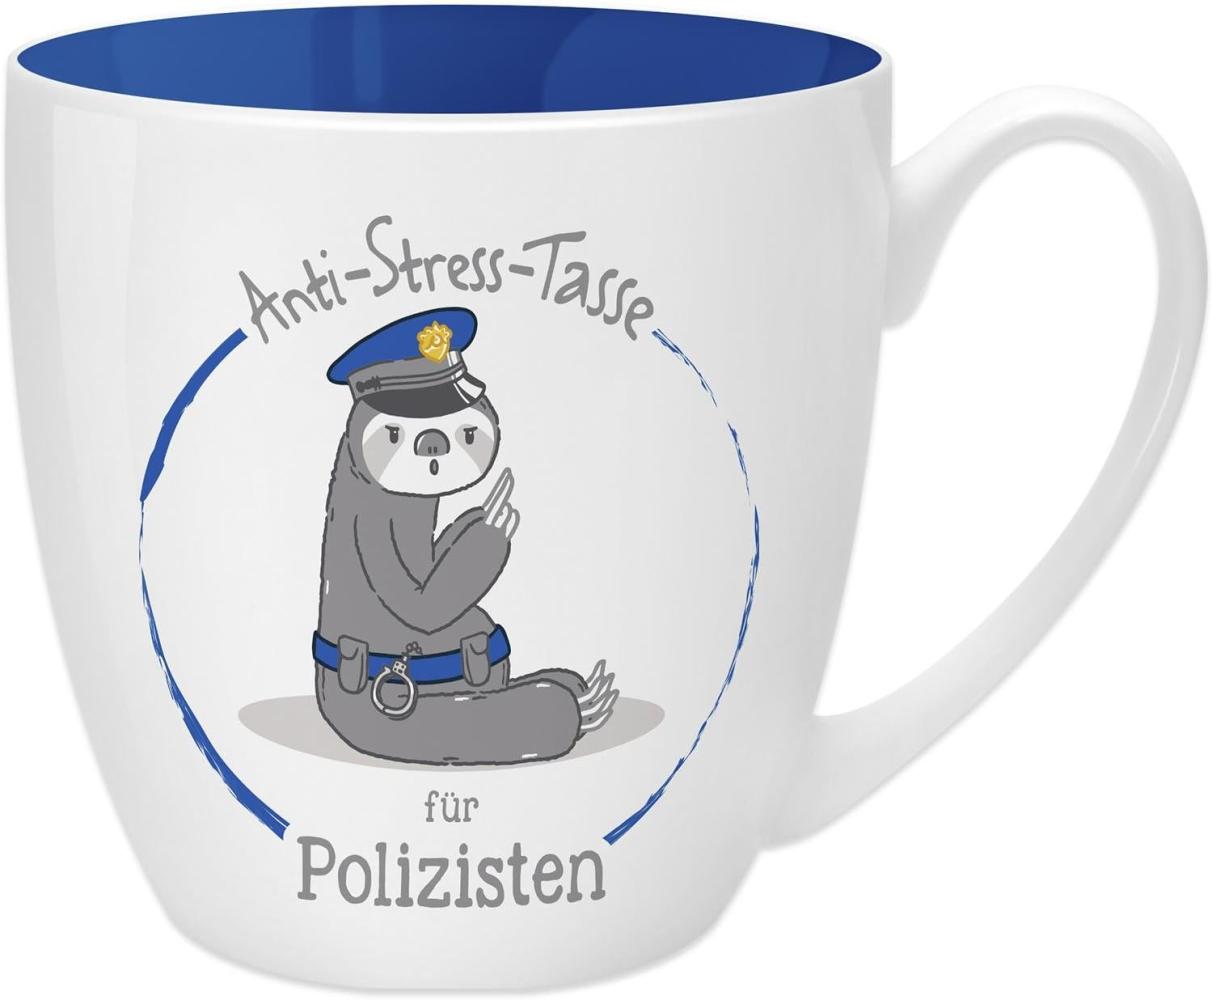 GRUSS & CO Anti-Stress-Tasse Motiv "Polizisten" | Tasse mit Spruch, 45 cl, New Bone China | Geschenk lustig | 45498 Bild 1